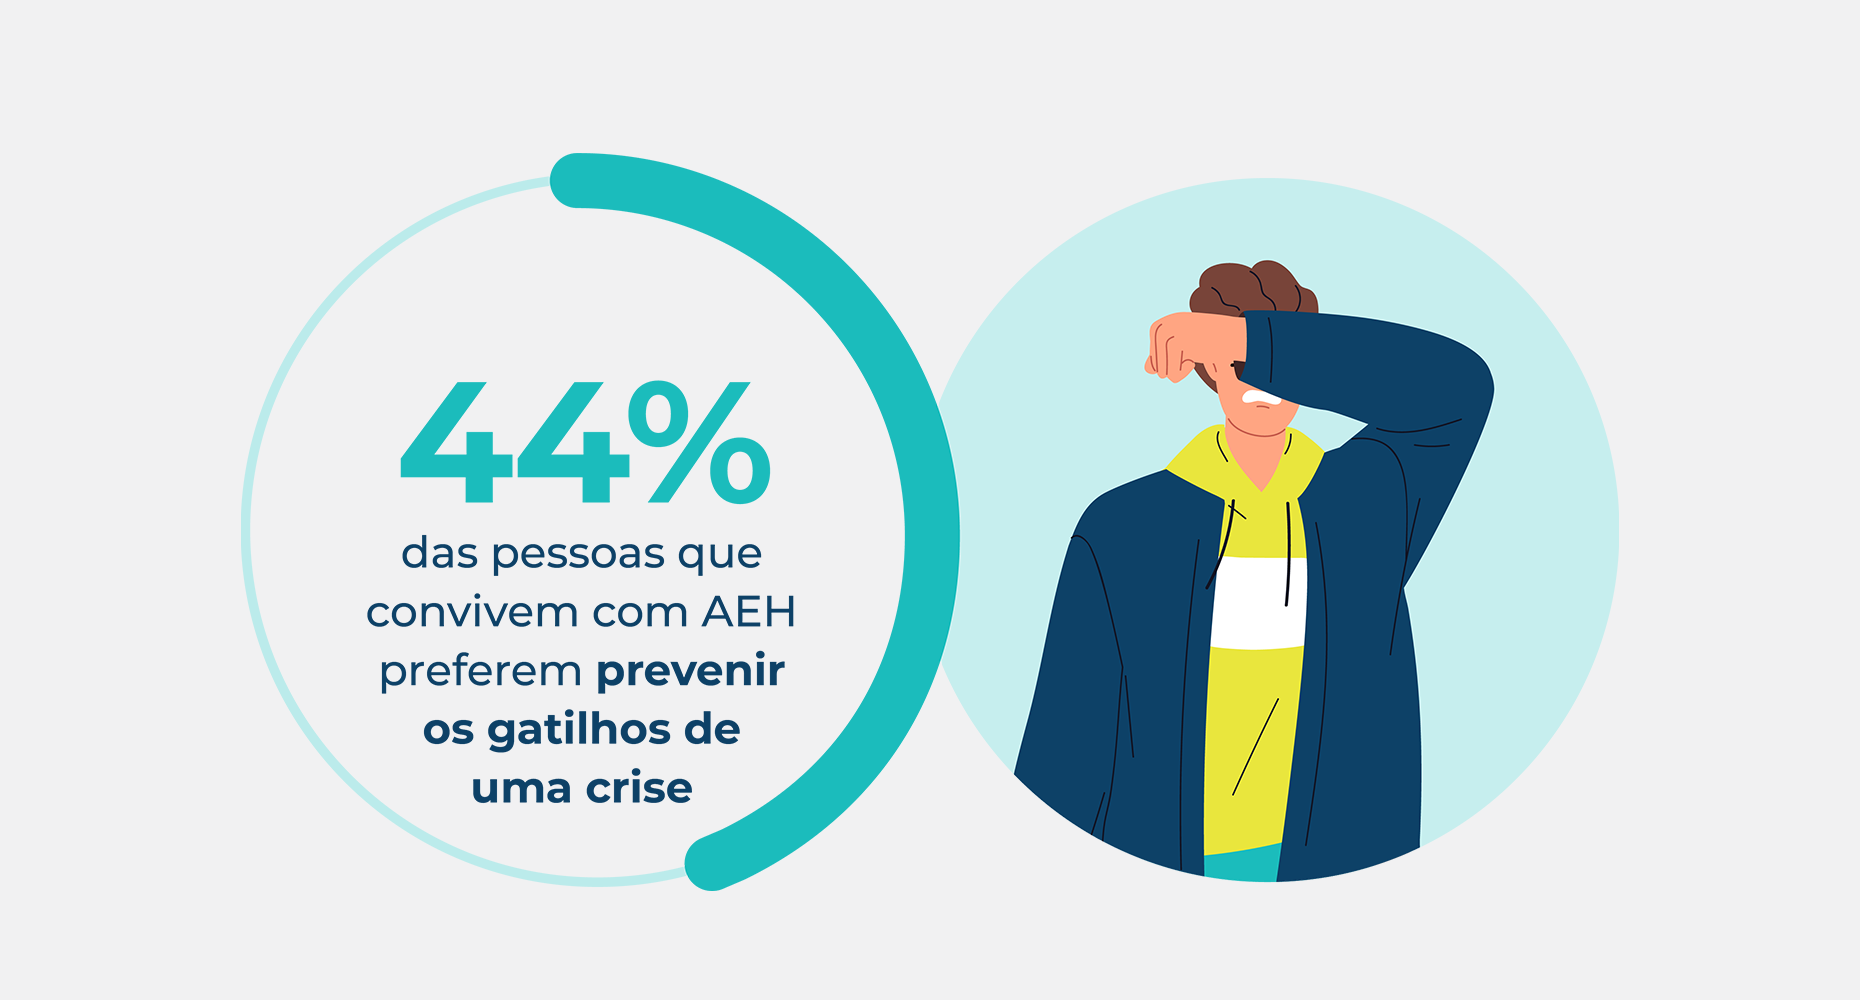 Estatística sobre as pessoas que convivem com AEH evitando desencadeadores de crises, destacando que 44% preferem evitar desencadeadores de crises.